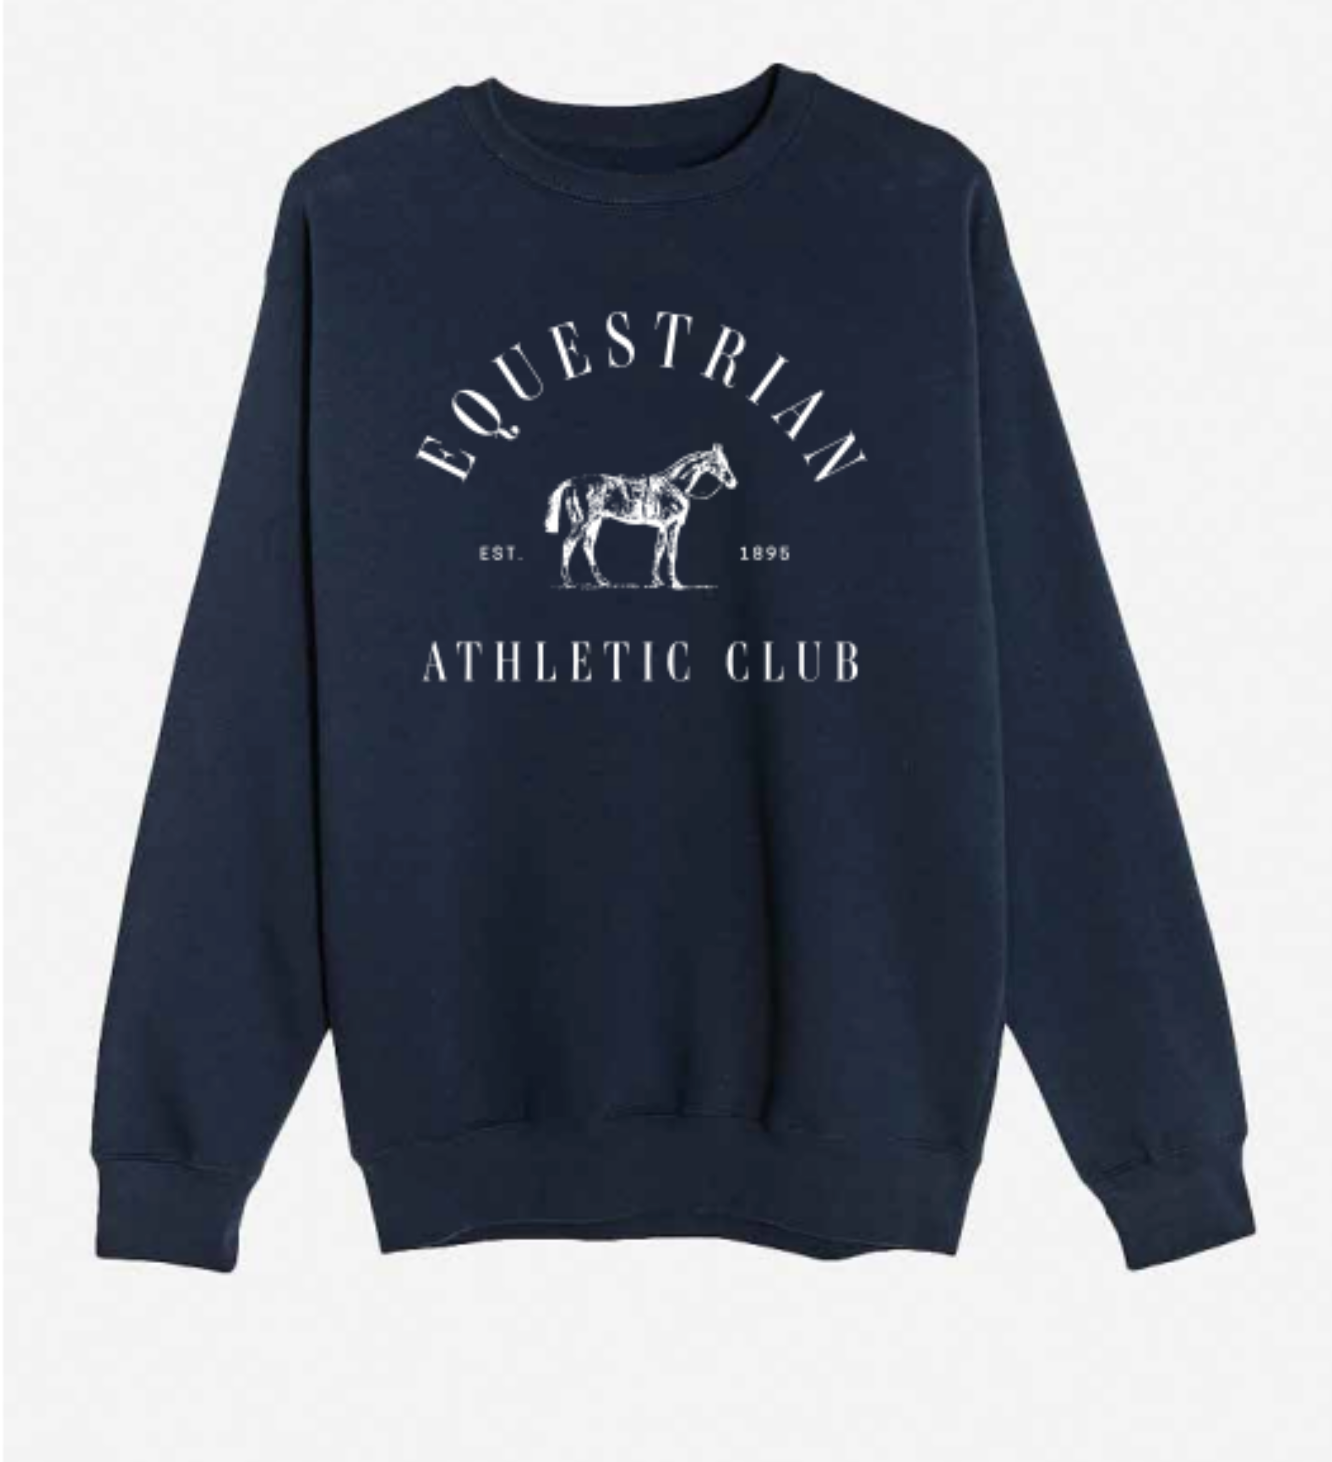 Equestrian Athletic Club, Crewneck Sweatshirt by Dapplebay Co.